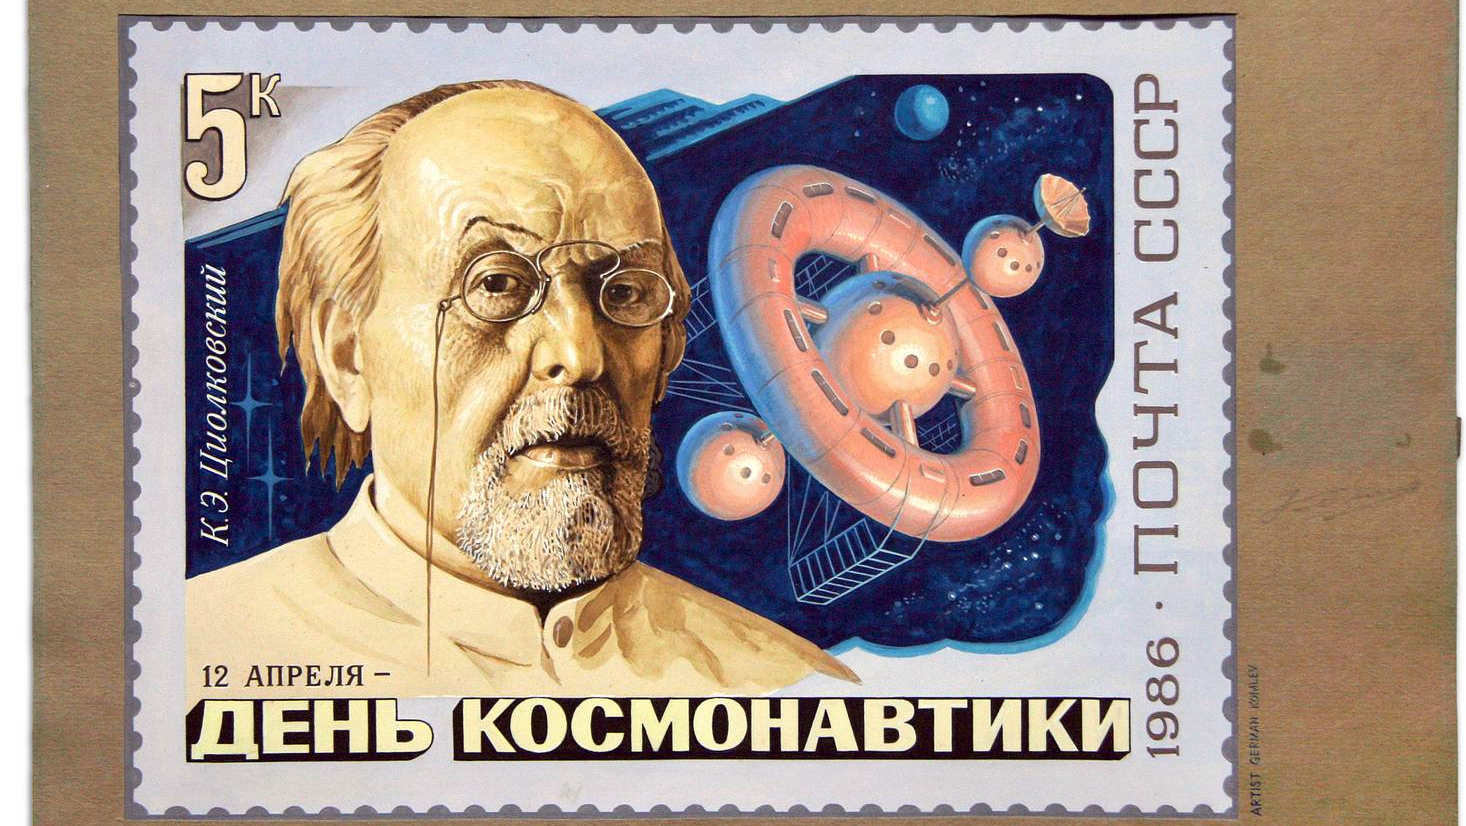 Циолковский позвал человечество в космическое будущее | ИА Красная Весна